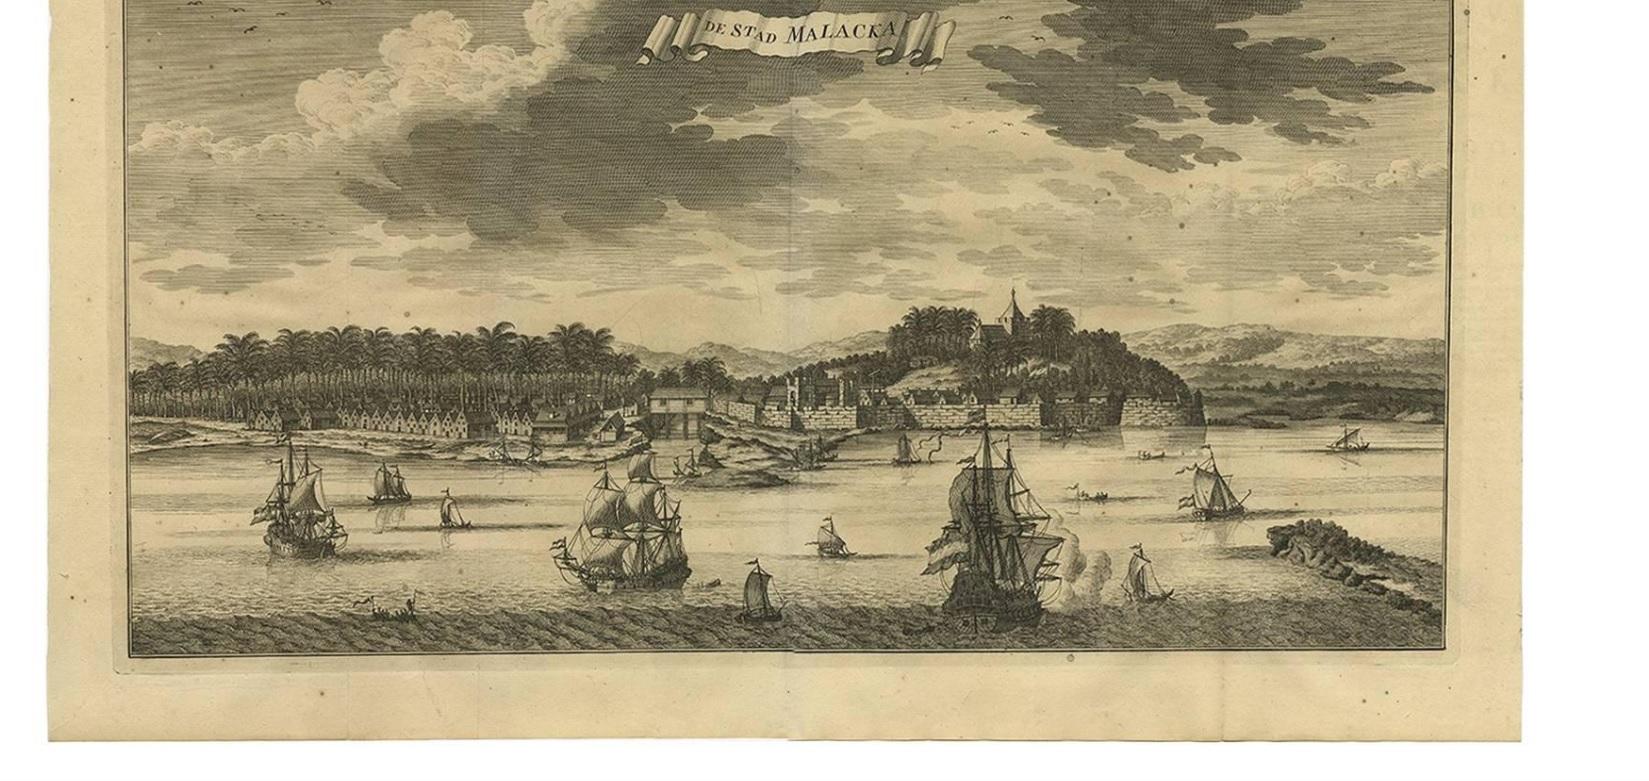 Diese Kupferstichansicht zeigt die Stadt Malakka mit zahlreichen Schiffen, die durch die Straße von Malakka fahren. 

Valentyn war ein prominenter Historiker der Niederländischen Ostindien-Kompanie, der vor allem durch seinen illustrierten Bericht